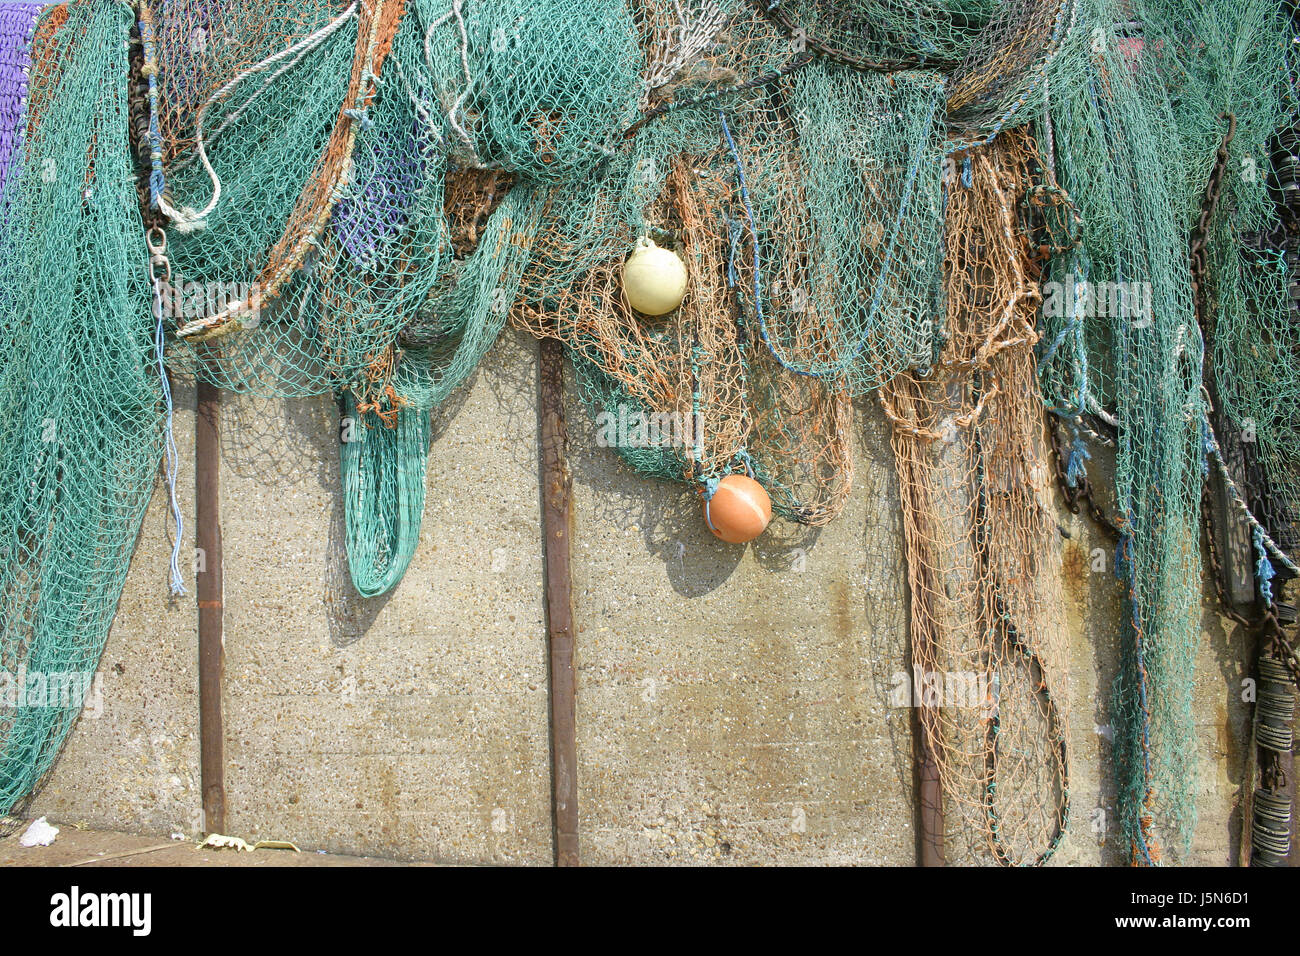 Farbigen oder bunten Fischernetze hängen in der Sonne getrocknet. Stockfoto